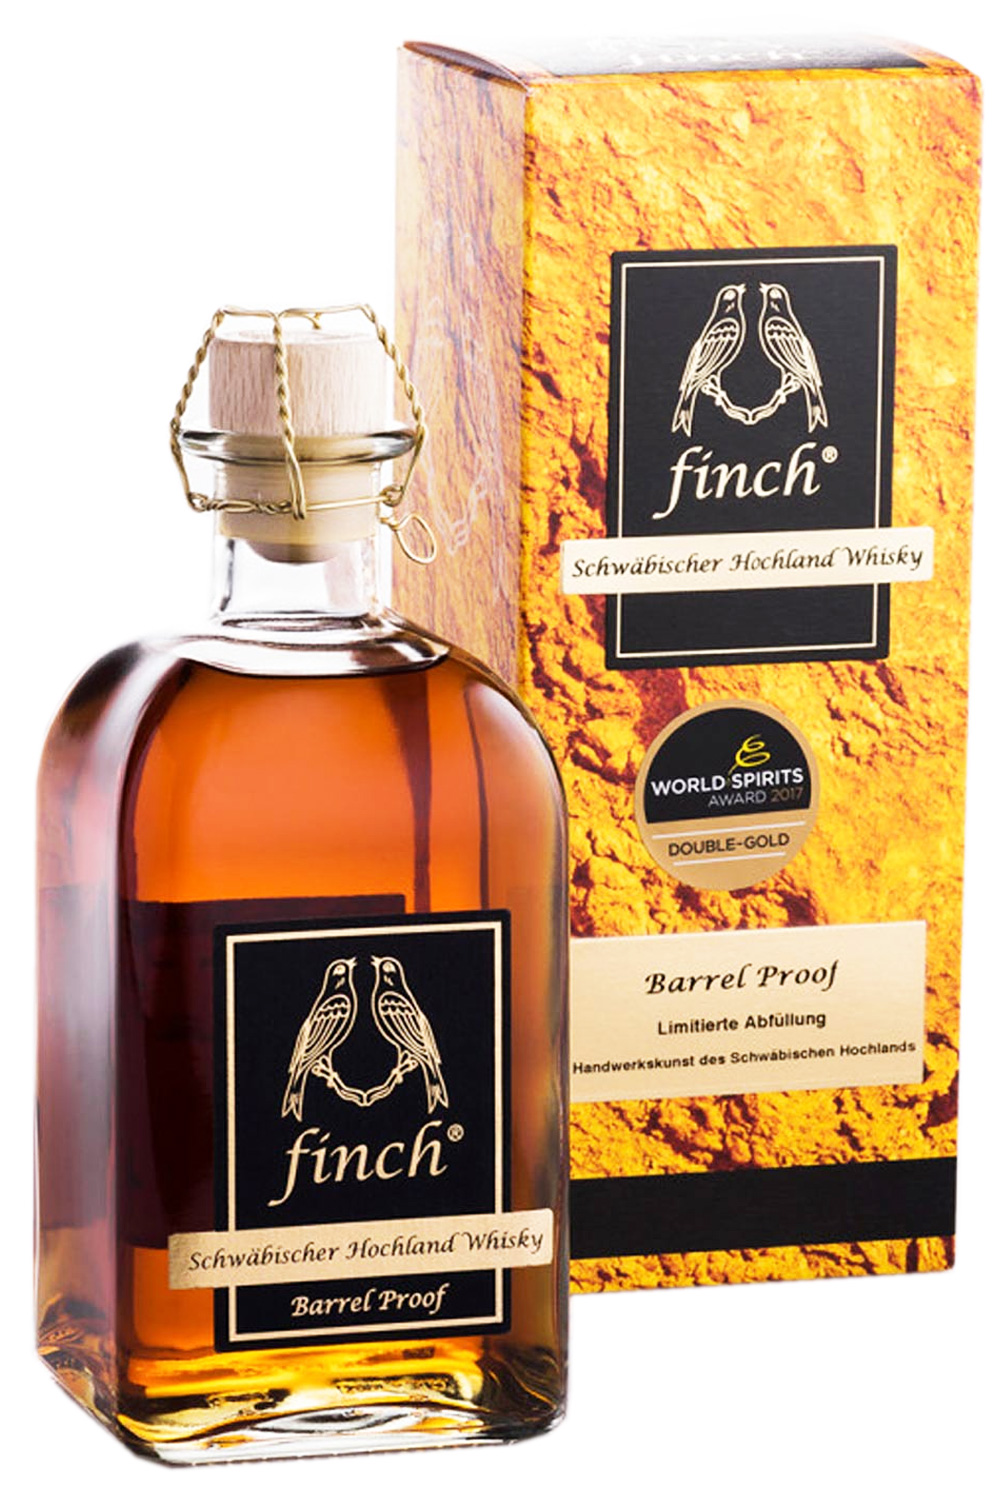 Finch Schwäbischer Hochland Whisky Barrel Proof 